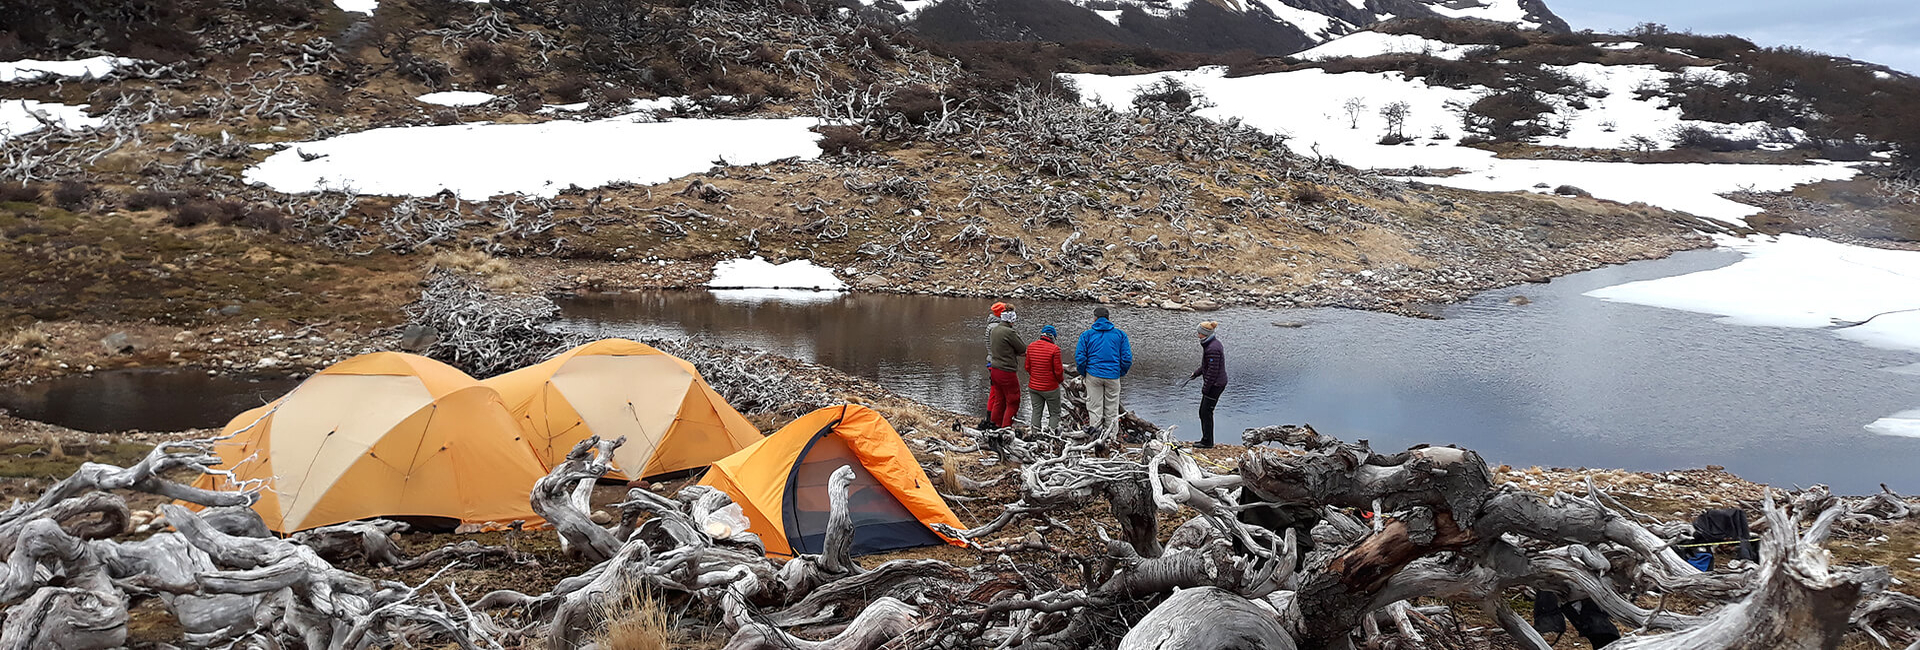 Camping Isla Navarino, Dientes de Navarino Trek, Tierra del Fuego